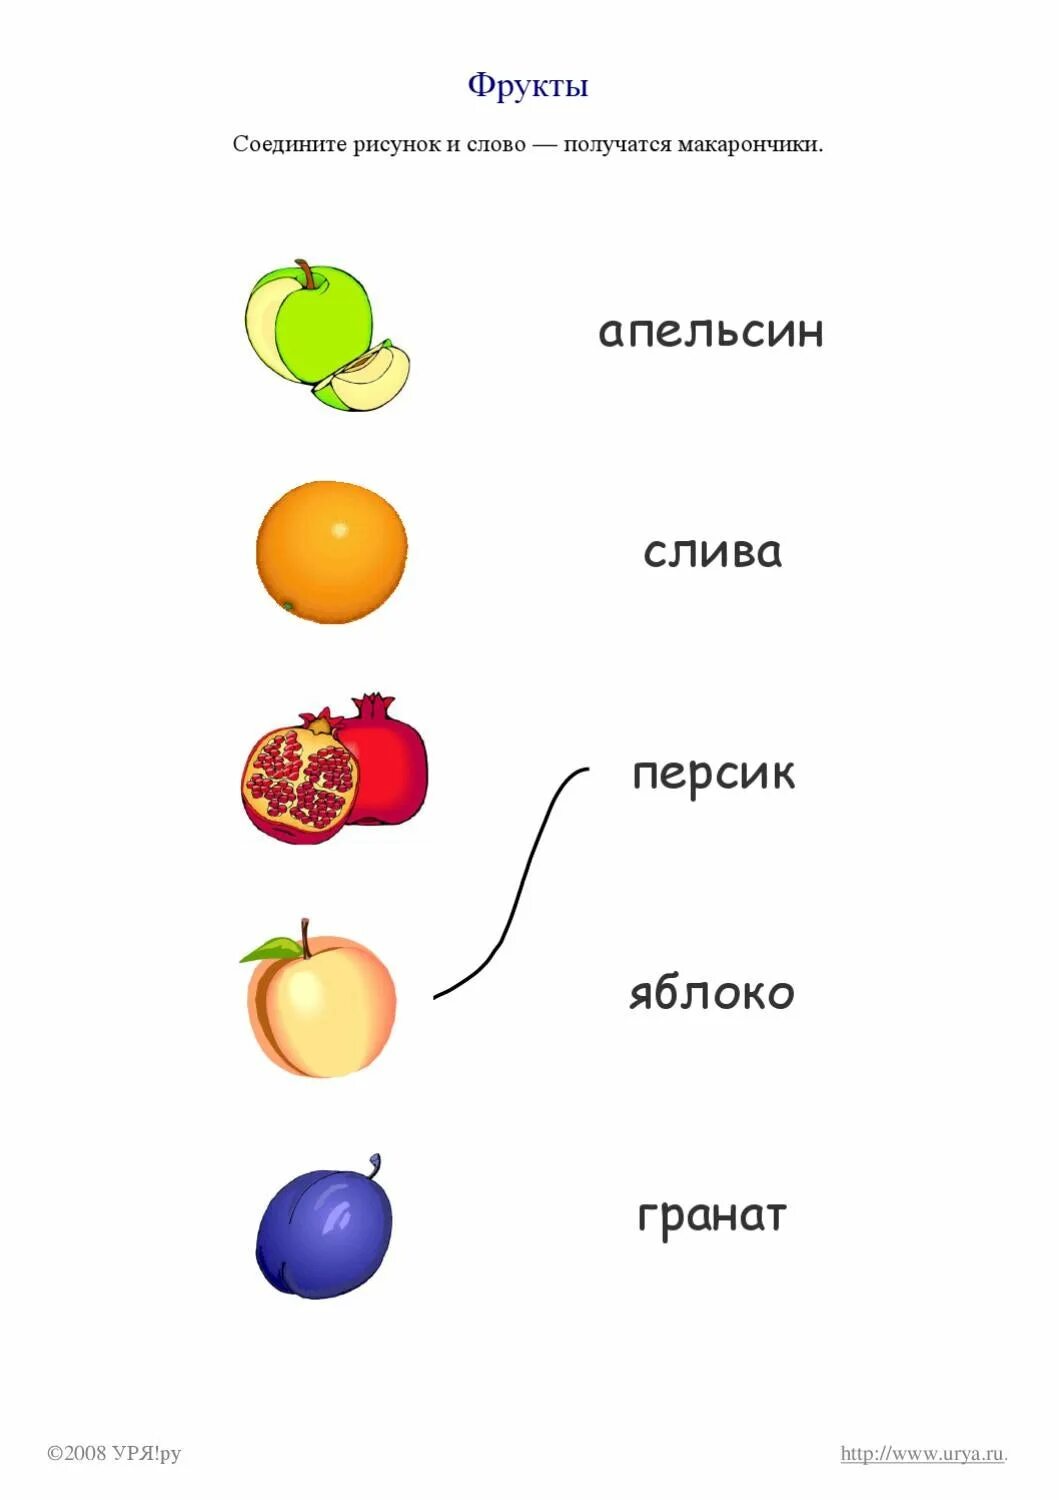 Соединить фрукты с названиями. Соедини фрукт и название. Соедини фрукты и овощи. Соотнеси овощи и фрукты названия. Соединяем фрукты 2